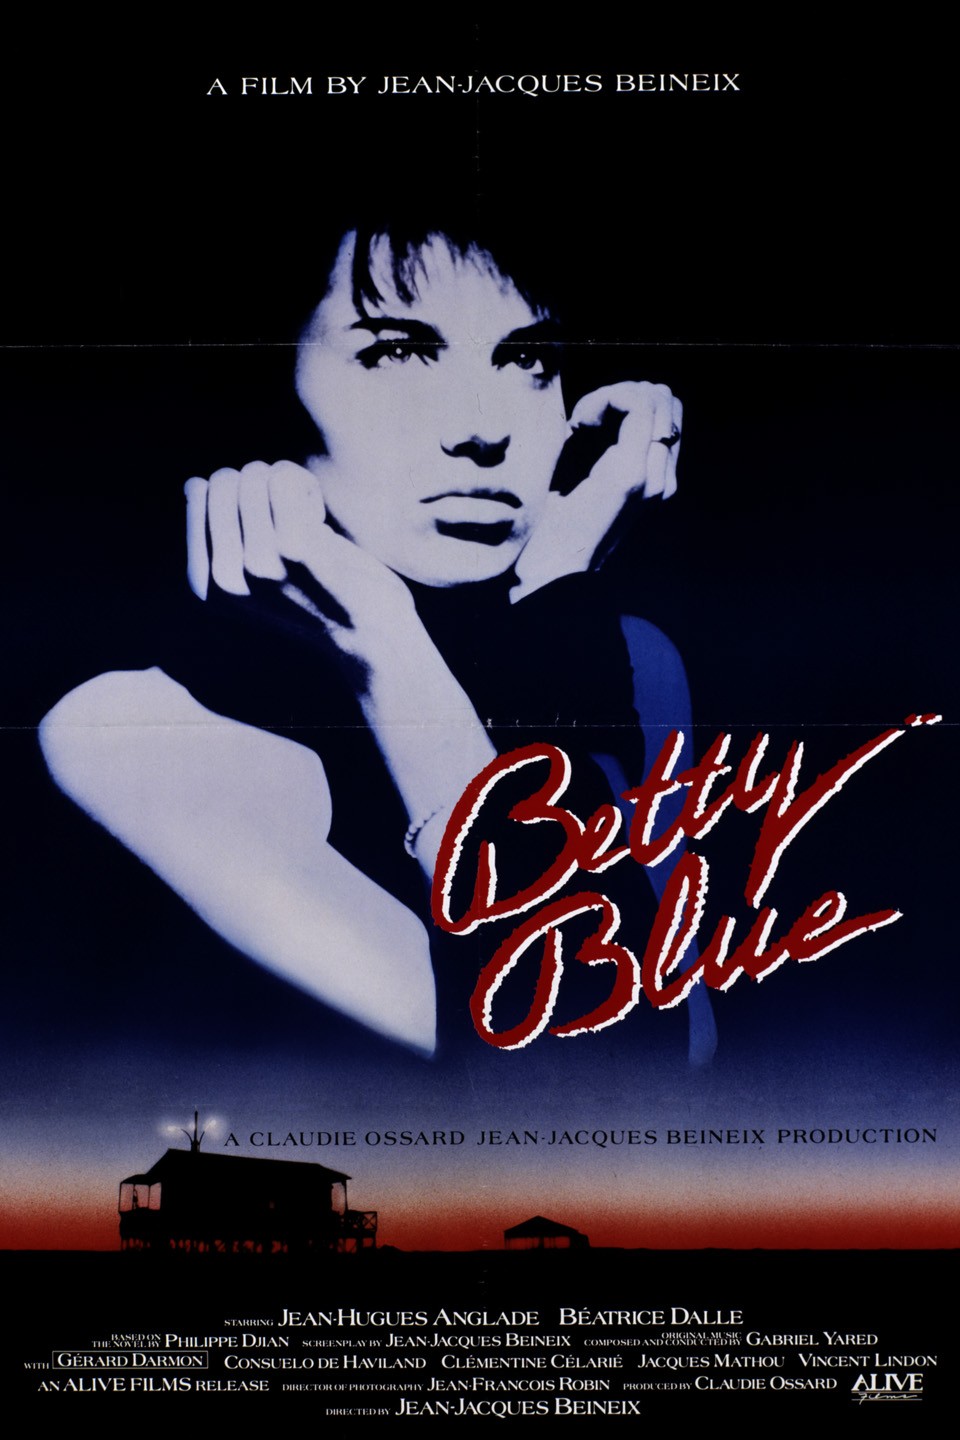 Плата за проезд 1986. Betty Blue 37 2 le matin (1986). 37°2 le matin 1986 poster.